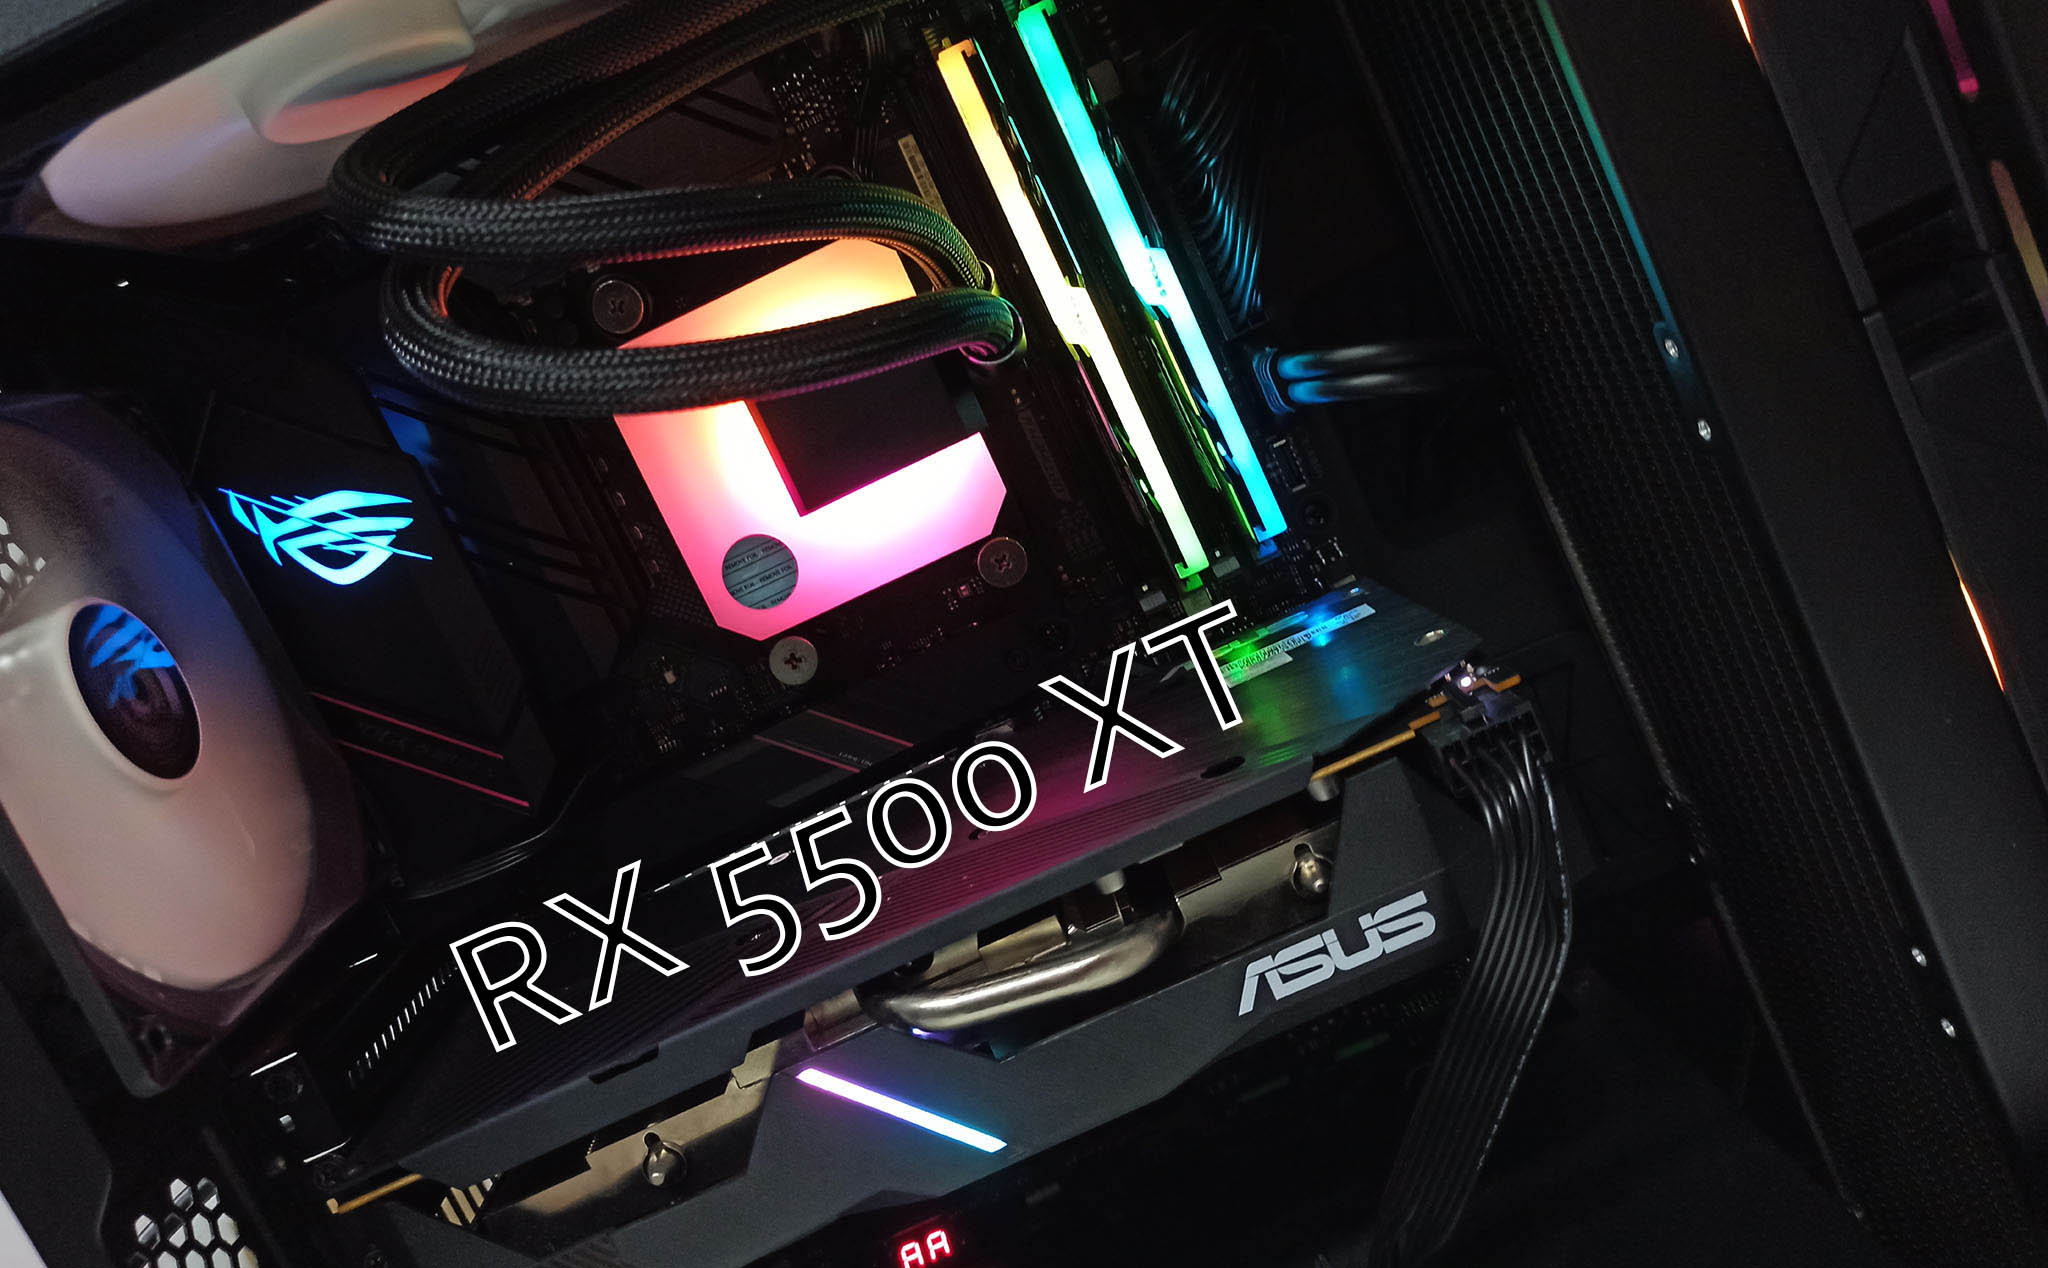 Trải nghiệm AMD Radeon RX 5500 XT - chơi game FHD khá ổn nhưng giá căng